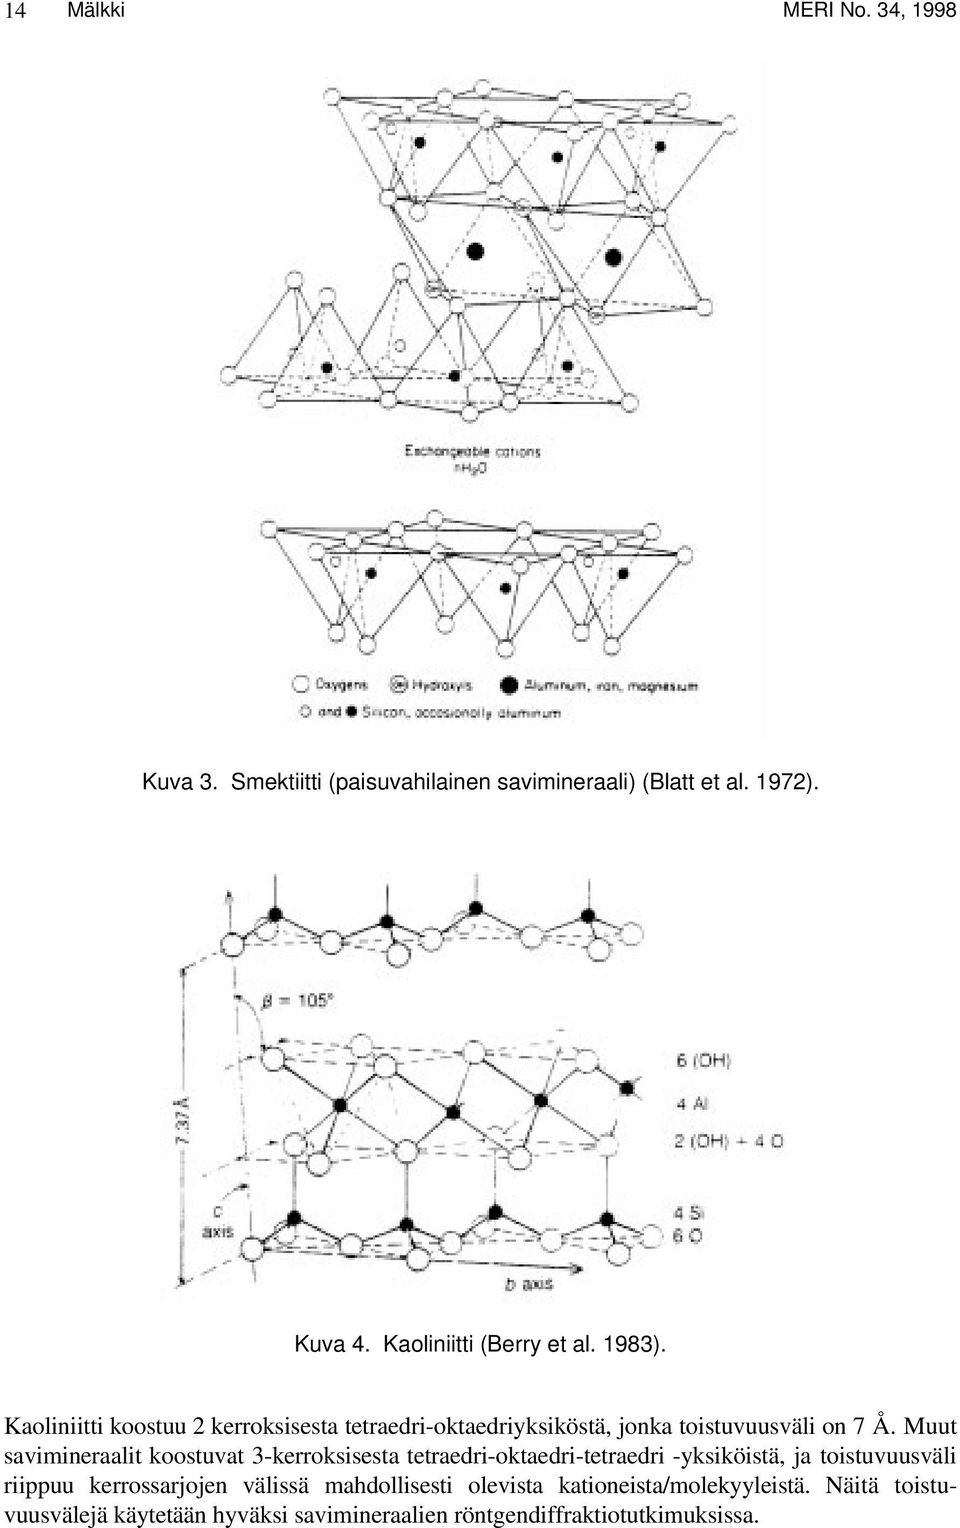 Muut savimineraalit koostuvat 3-kerroksisesta tetraedri-oktaedri-tetraedri -yksiköistä, ja toistuvuusväli riippuu